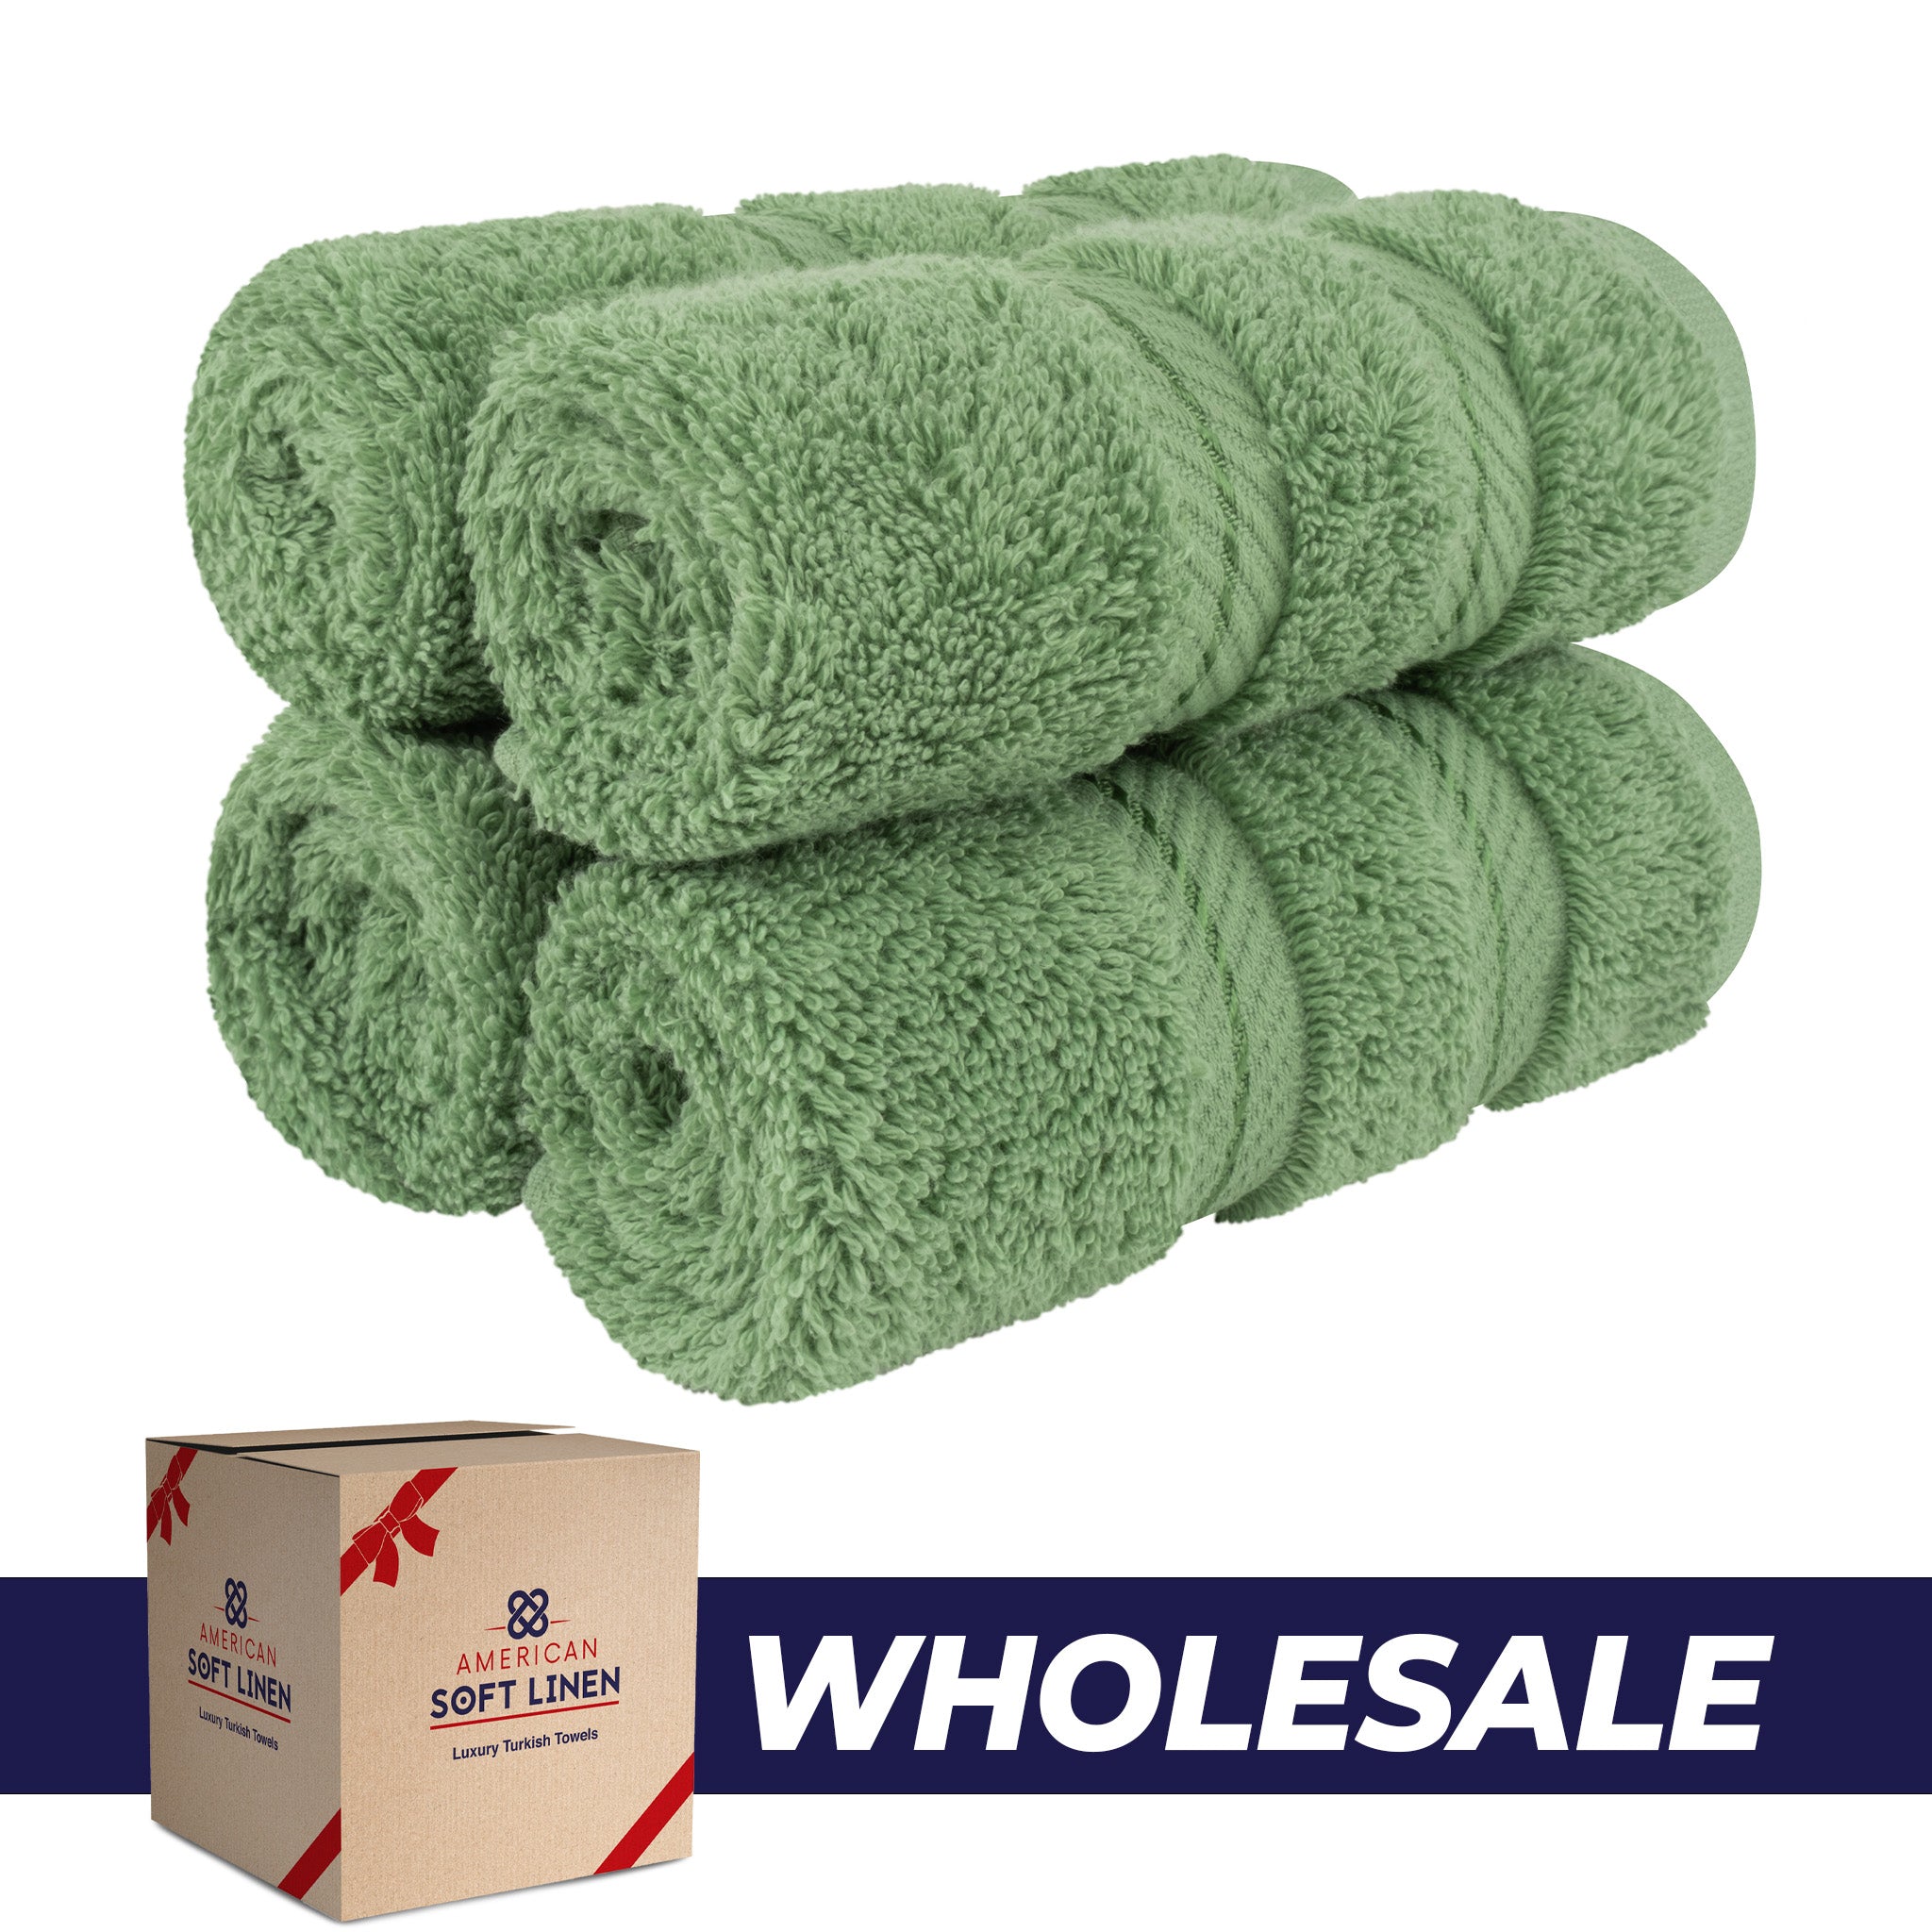  American Soft Linen 100% Turkish Cotton 4 Piece Washcloth Set - Wholesale - sage-green-0